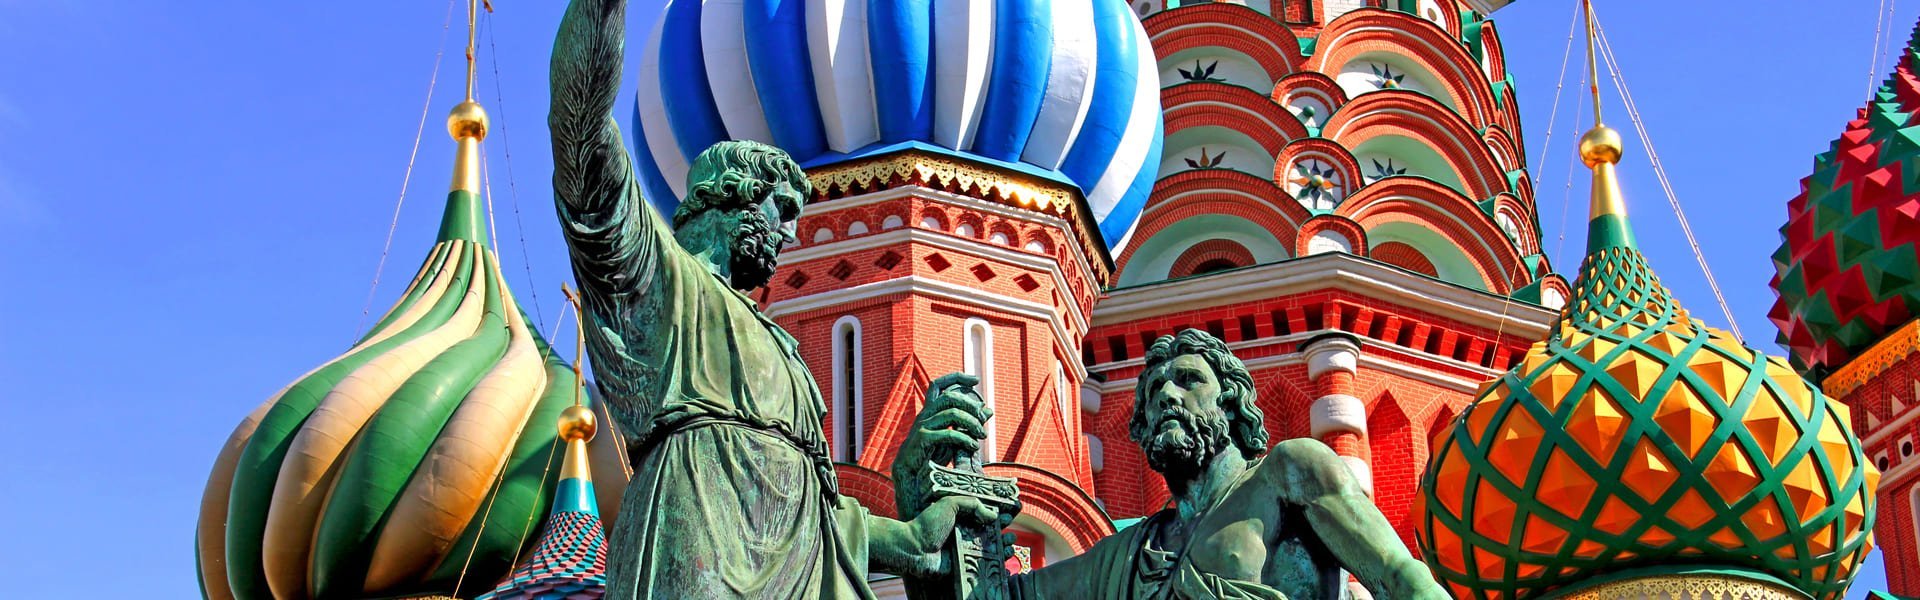 Basiliuskathedral op het Rode Plein in Moskou, Rusland